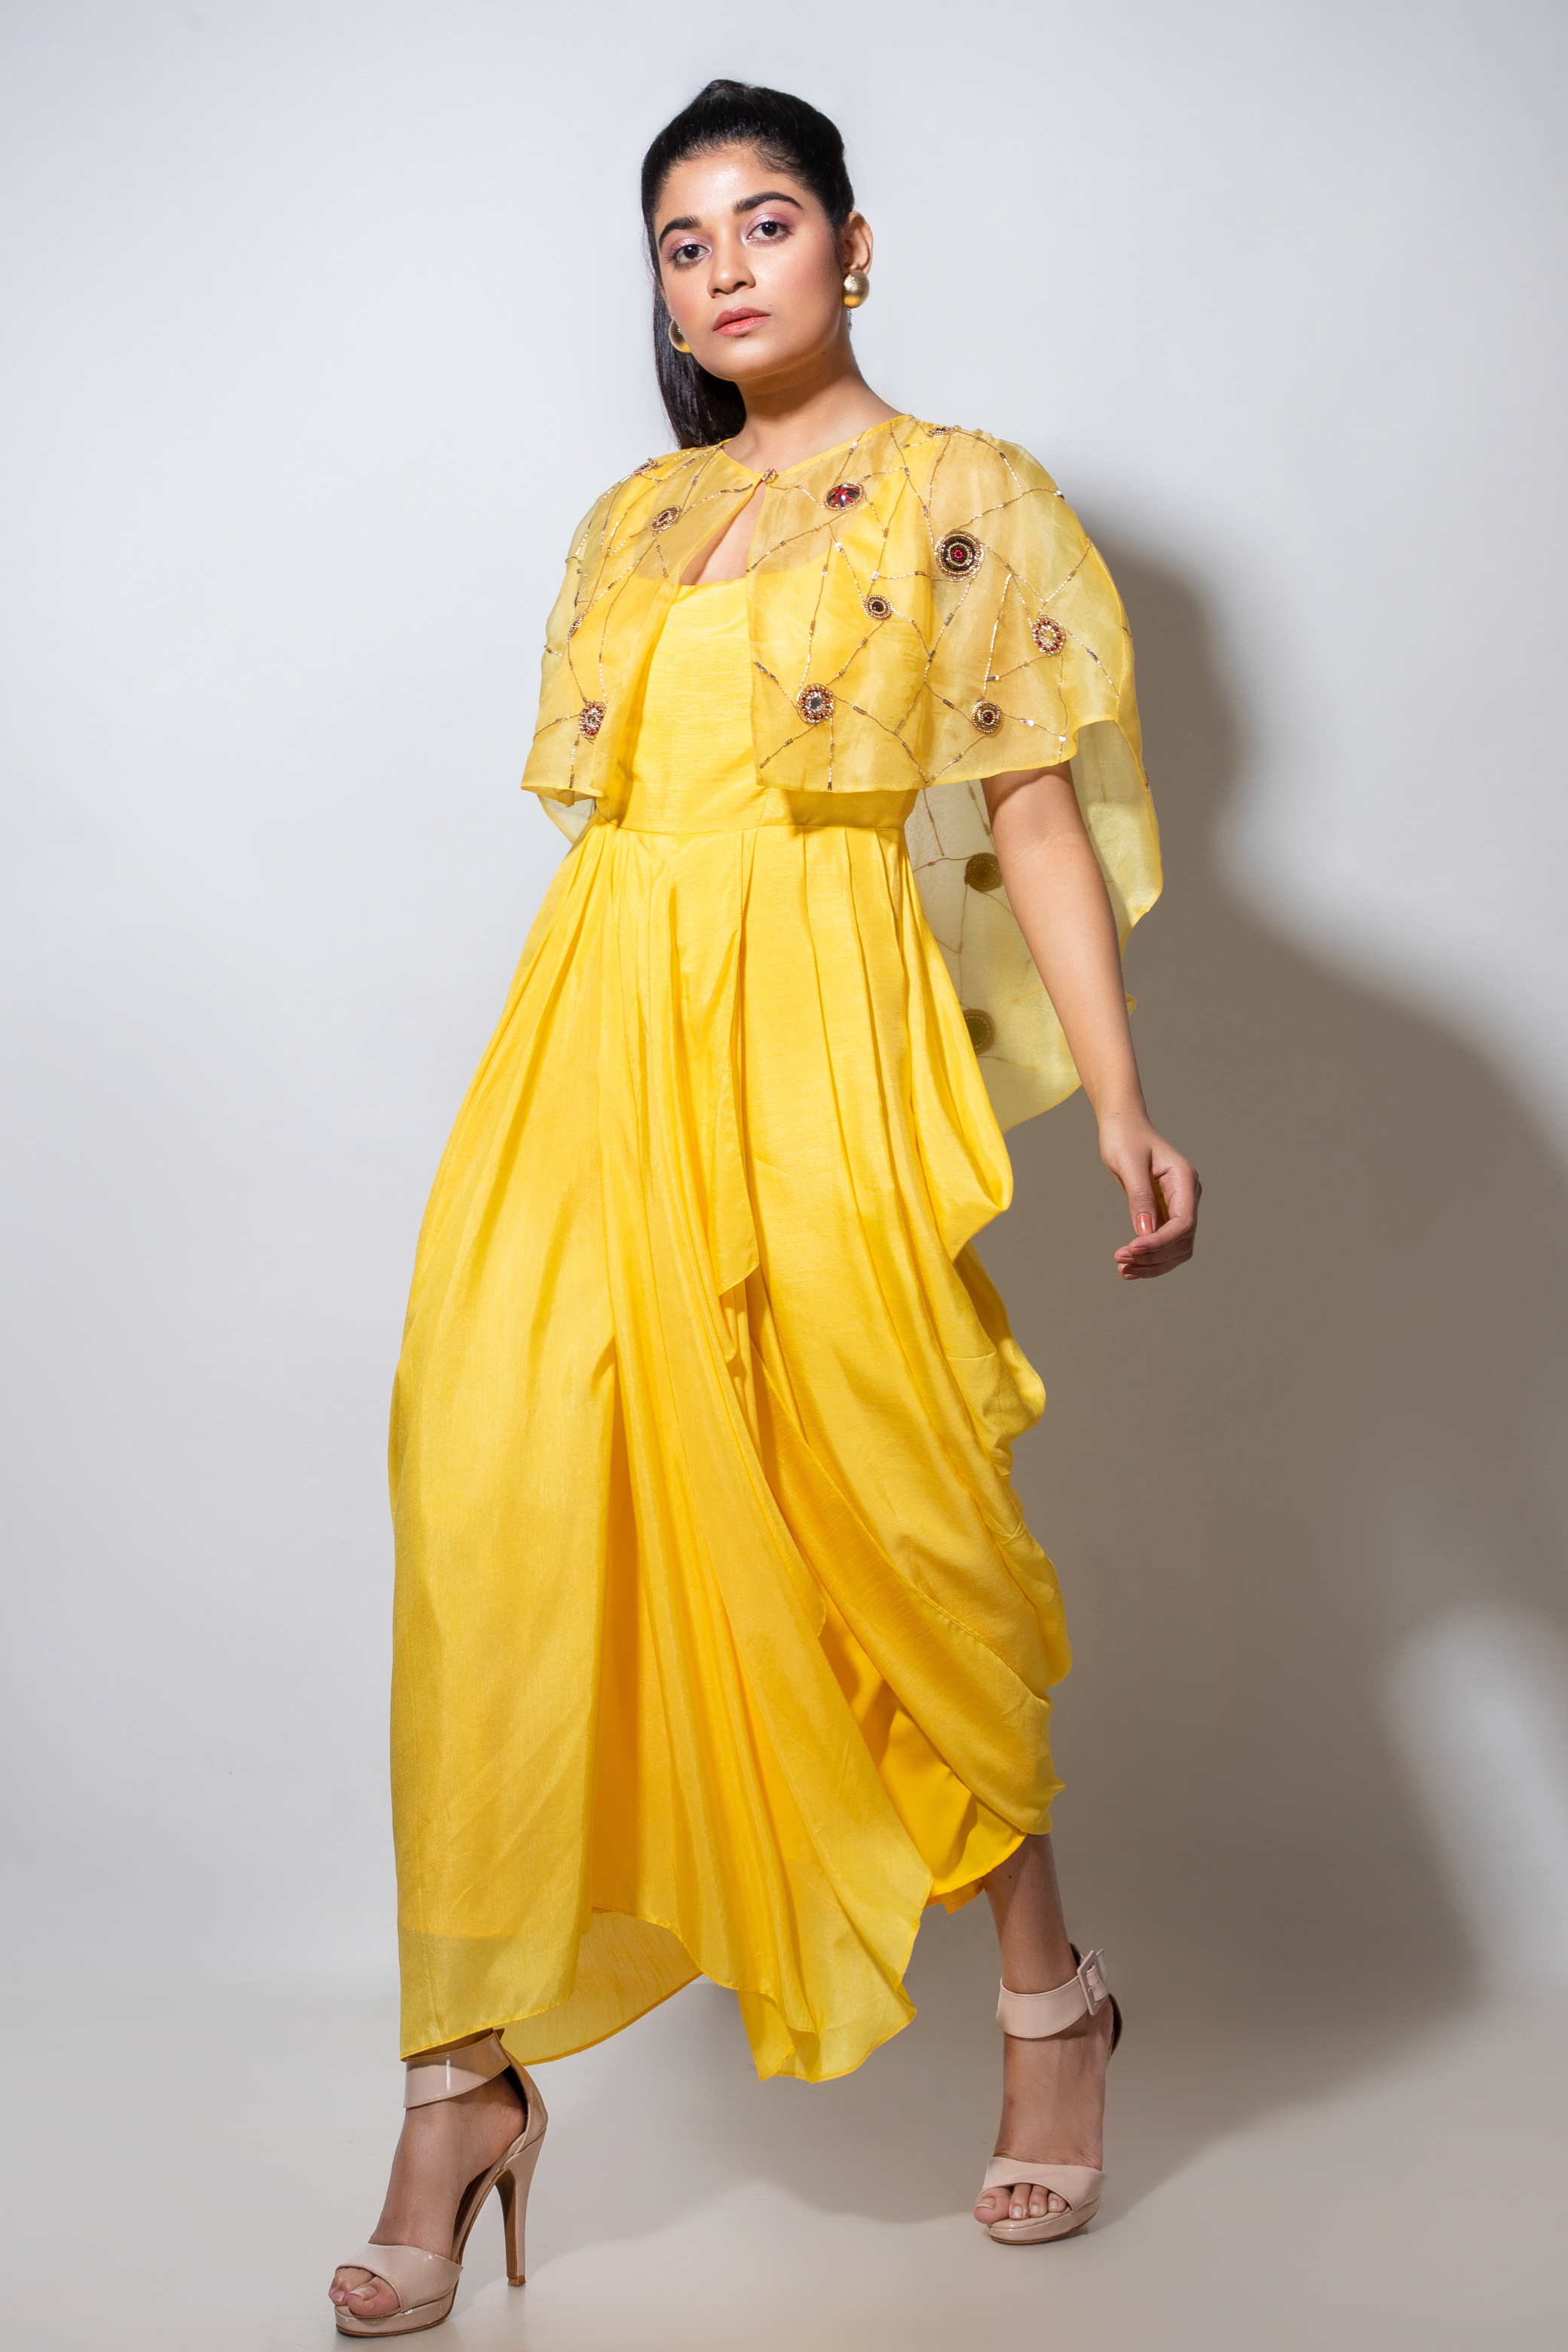 Tuscany Yellow Godet draped saree